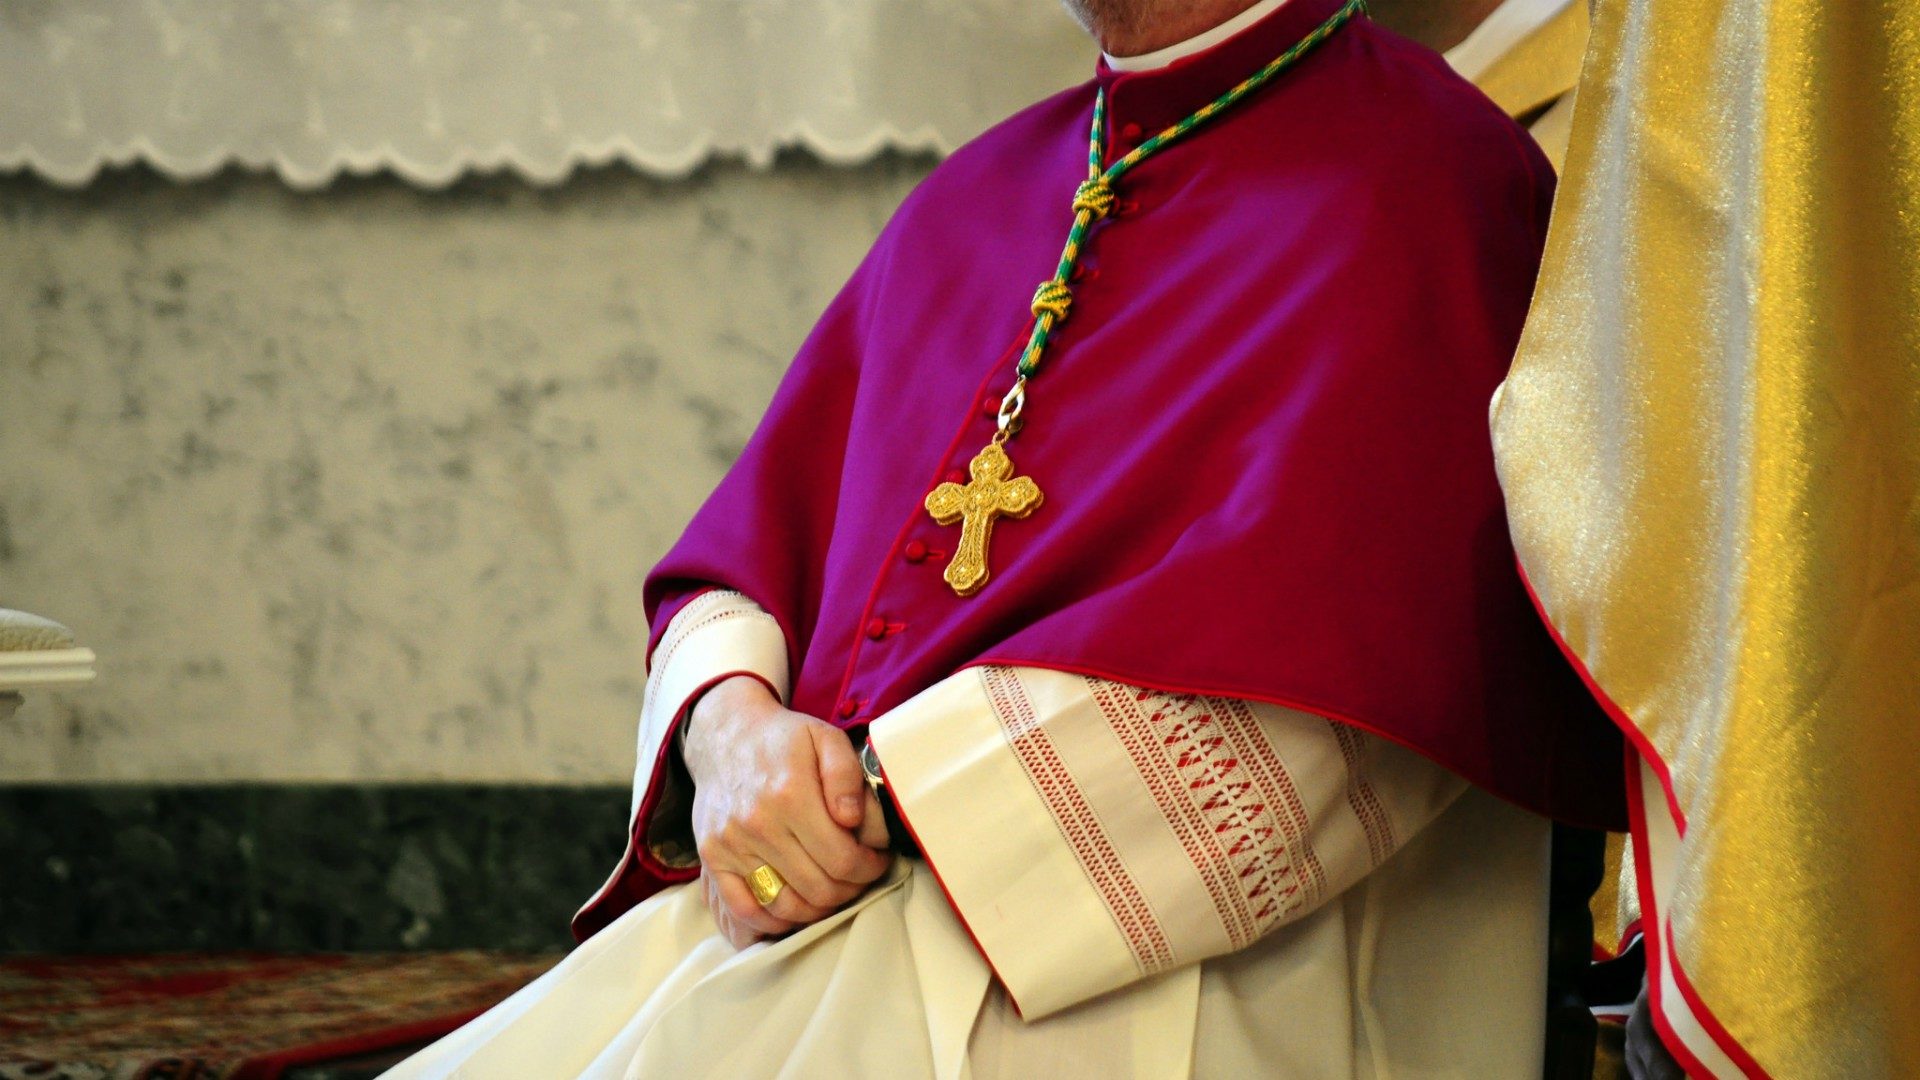 Le pape François a exhorté les évêques à "ne pas devenir des princes" (Photo d'illustration: Paval Hadzinski/Flickr/CC BY-NC-ND 2.0)